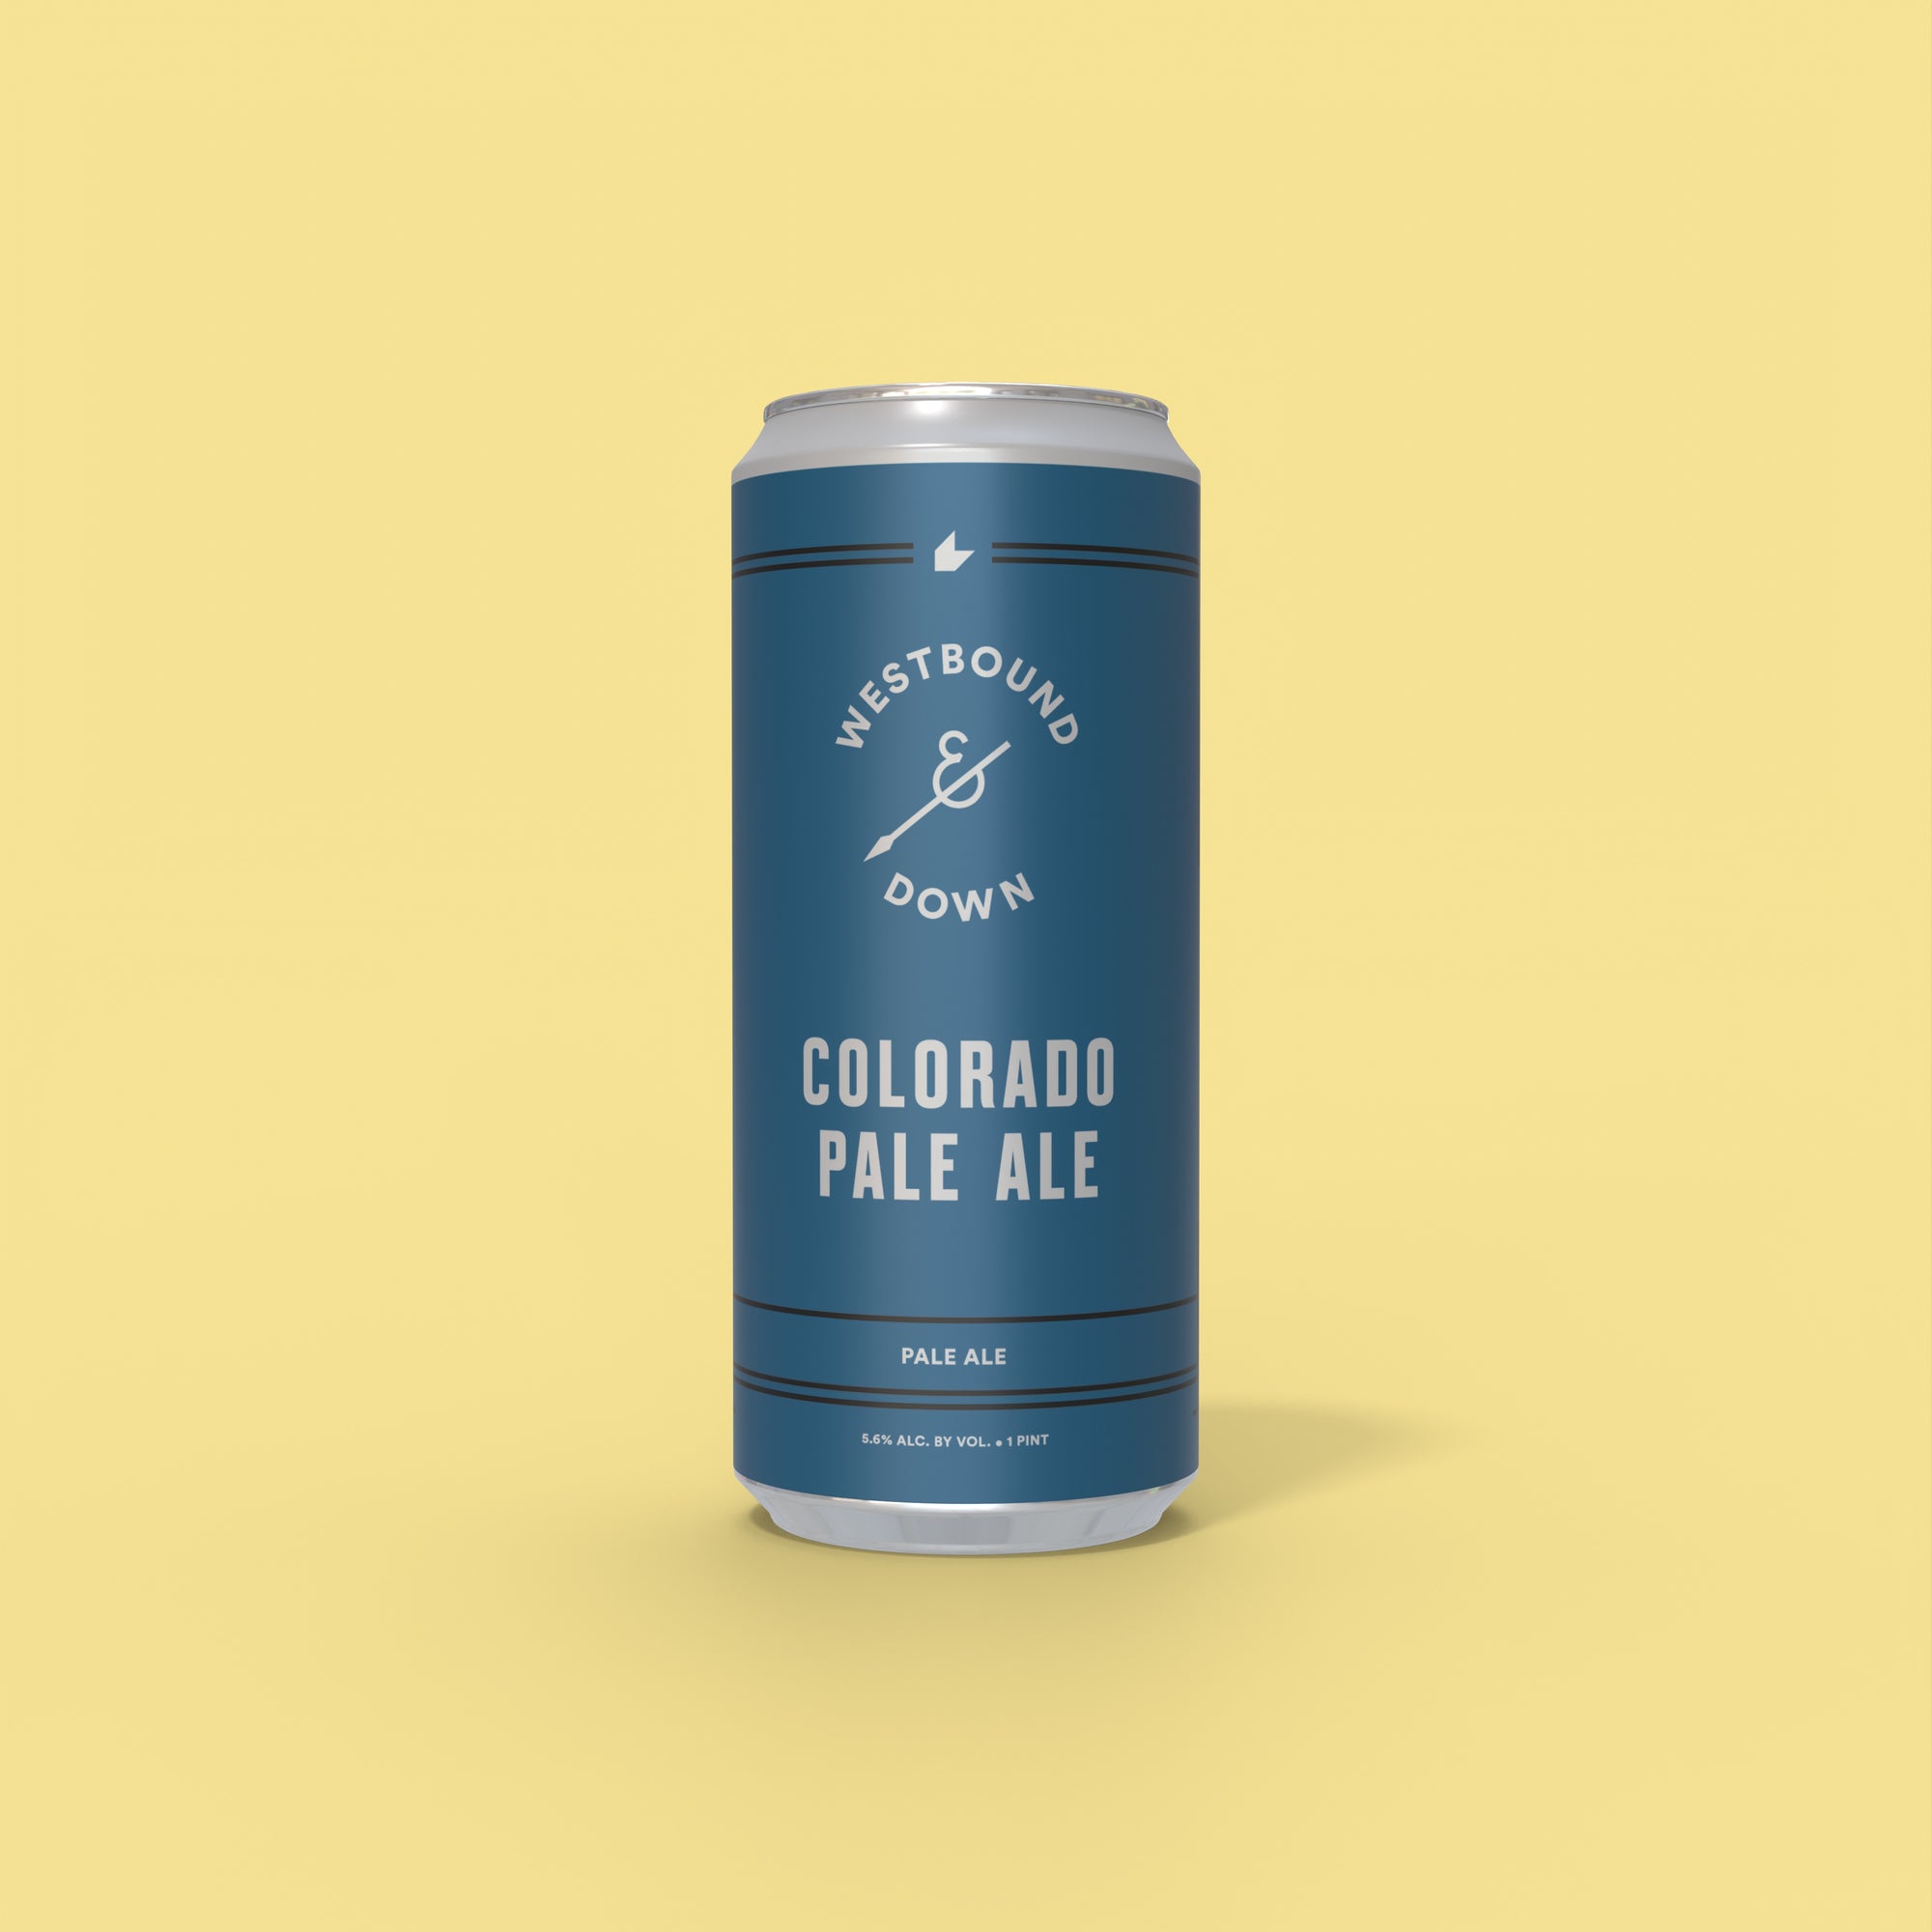 Colorado Pale Ale